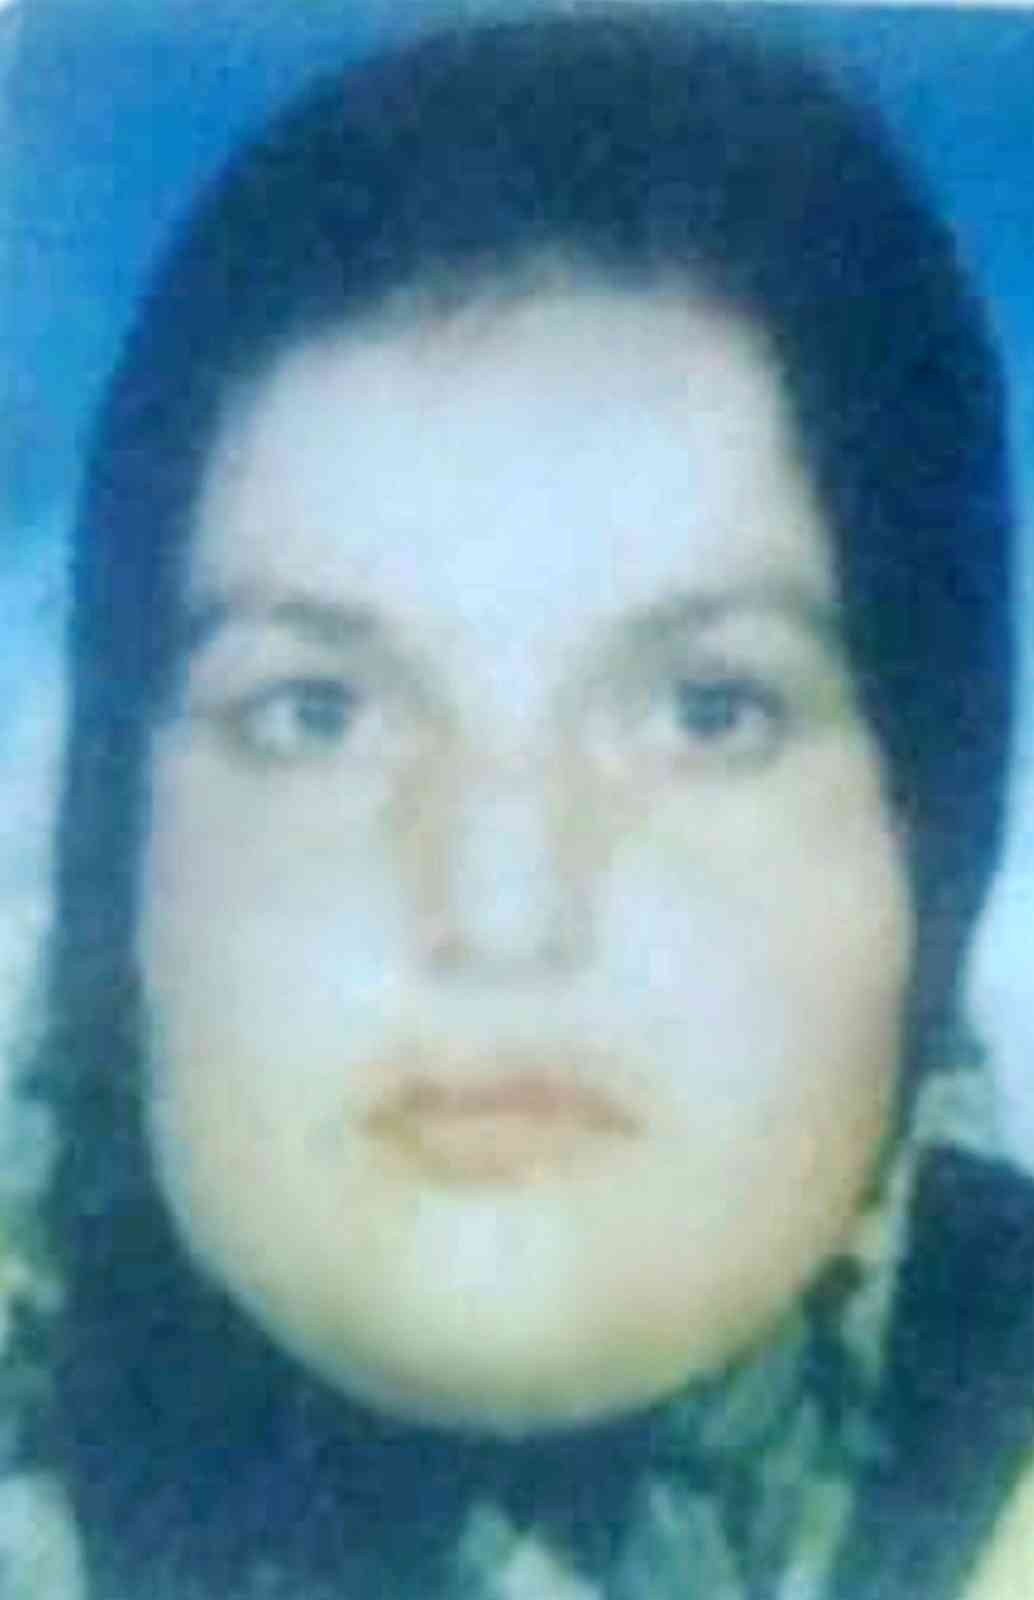 Epilepsi krizi geçirirken sobanın üzerindeki yemekle yanan kadın hayatını kaybetti #samsun